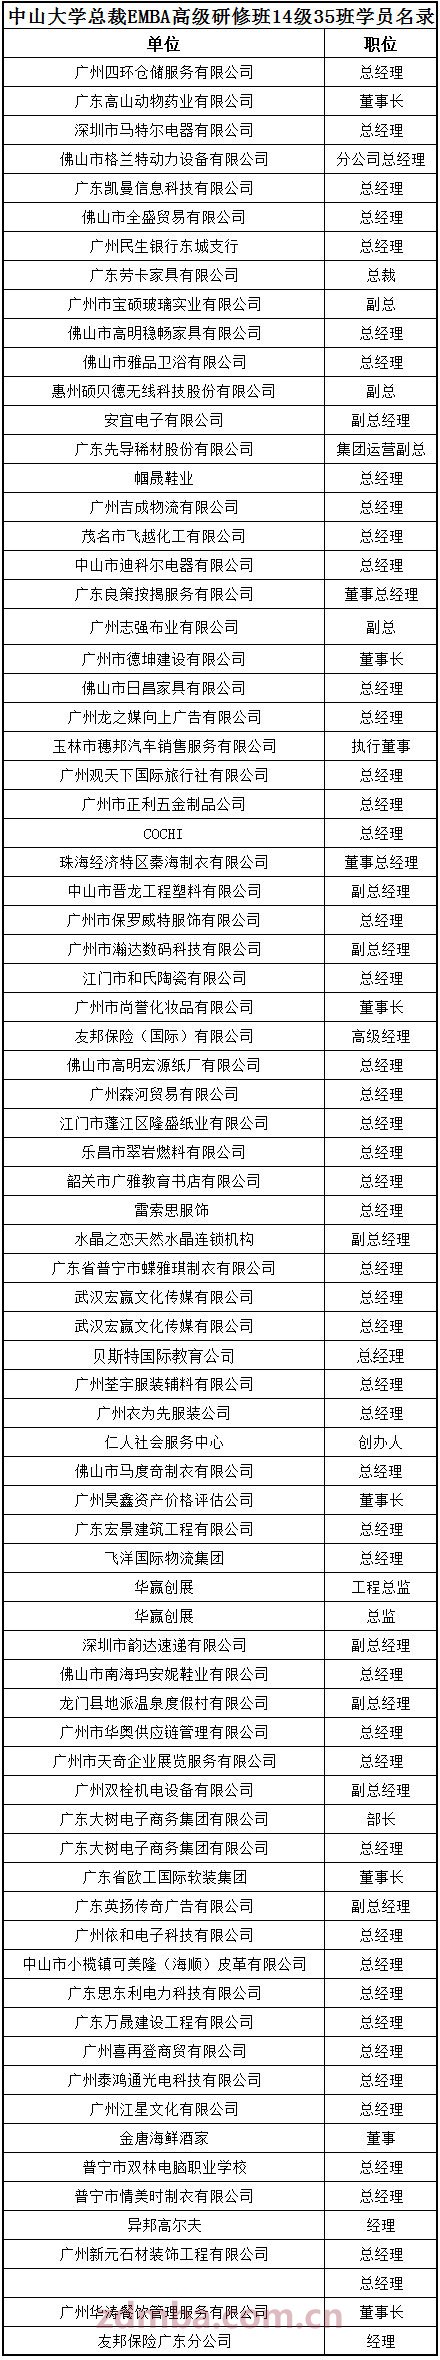 中山大学时代华商教育中心总裁高级工商管理高级研修班精要课程研修班三十五班学员名录册。